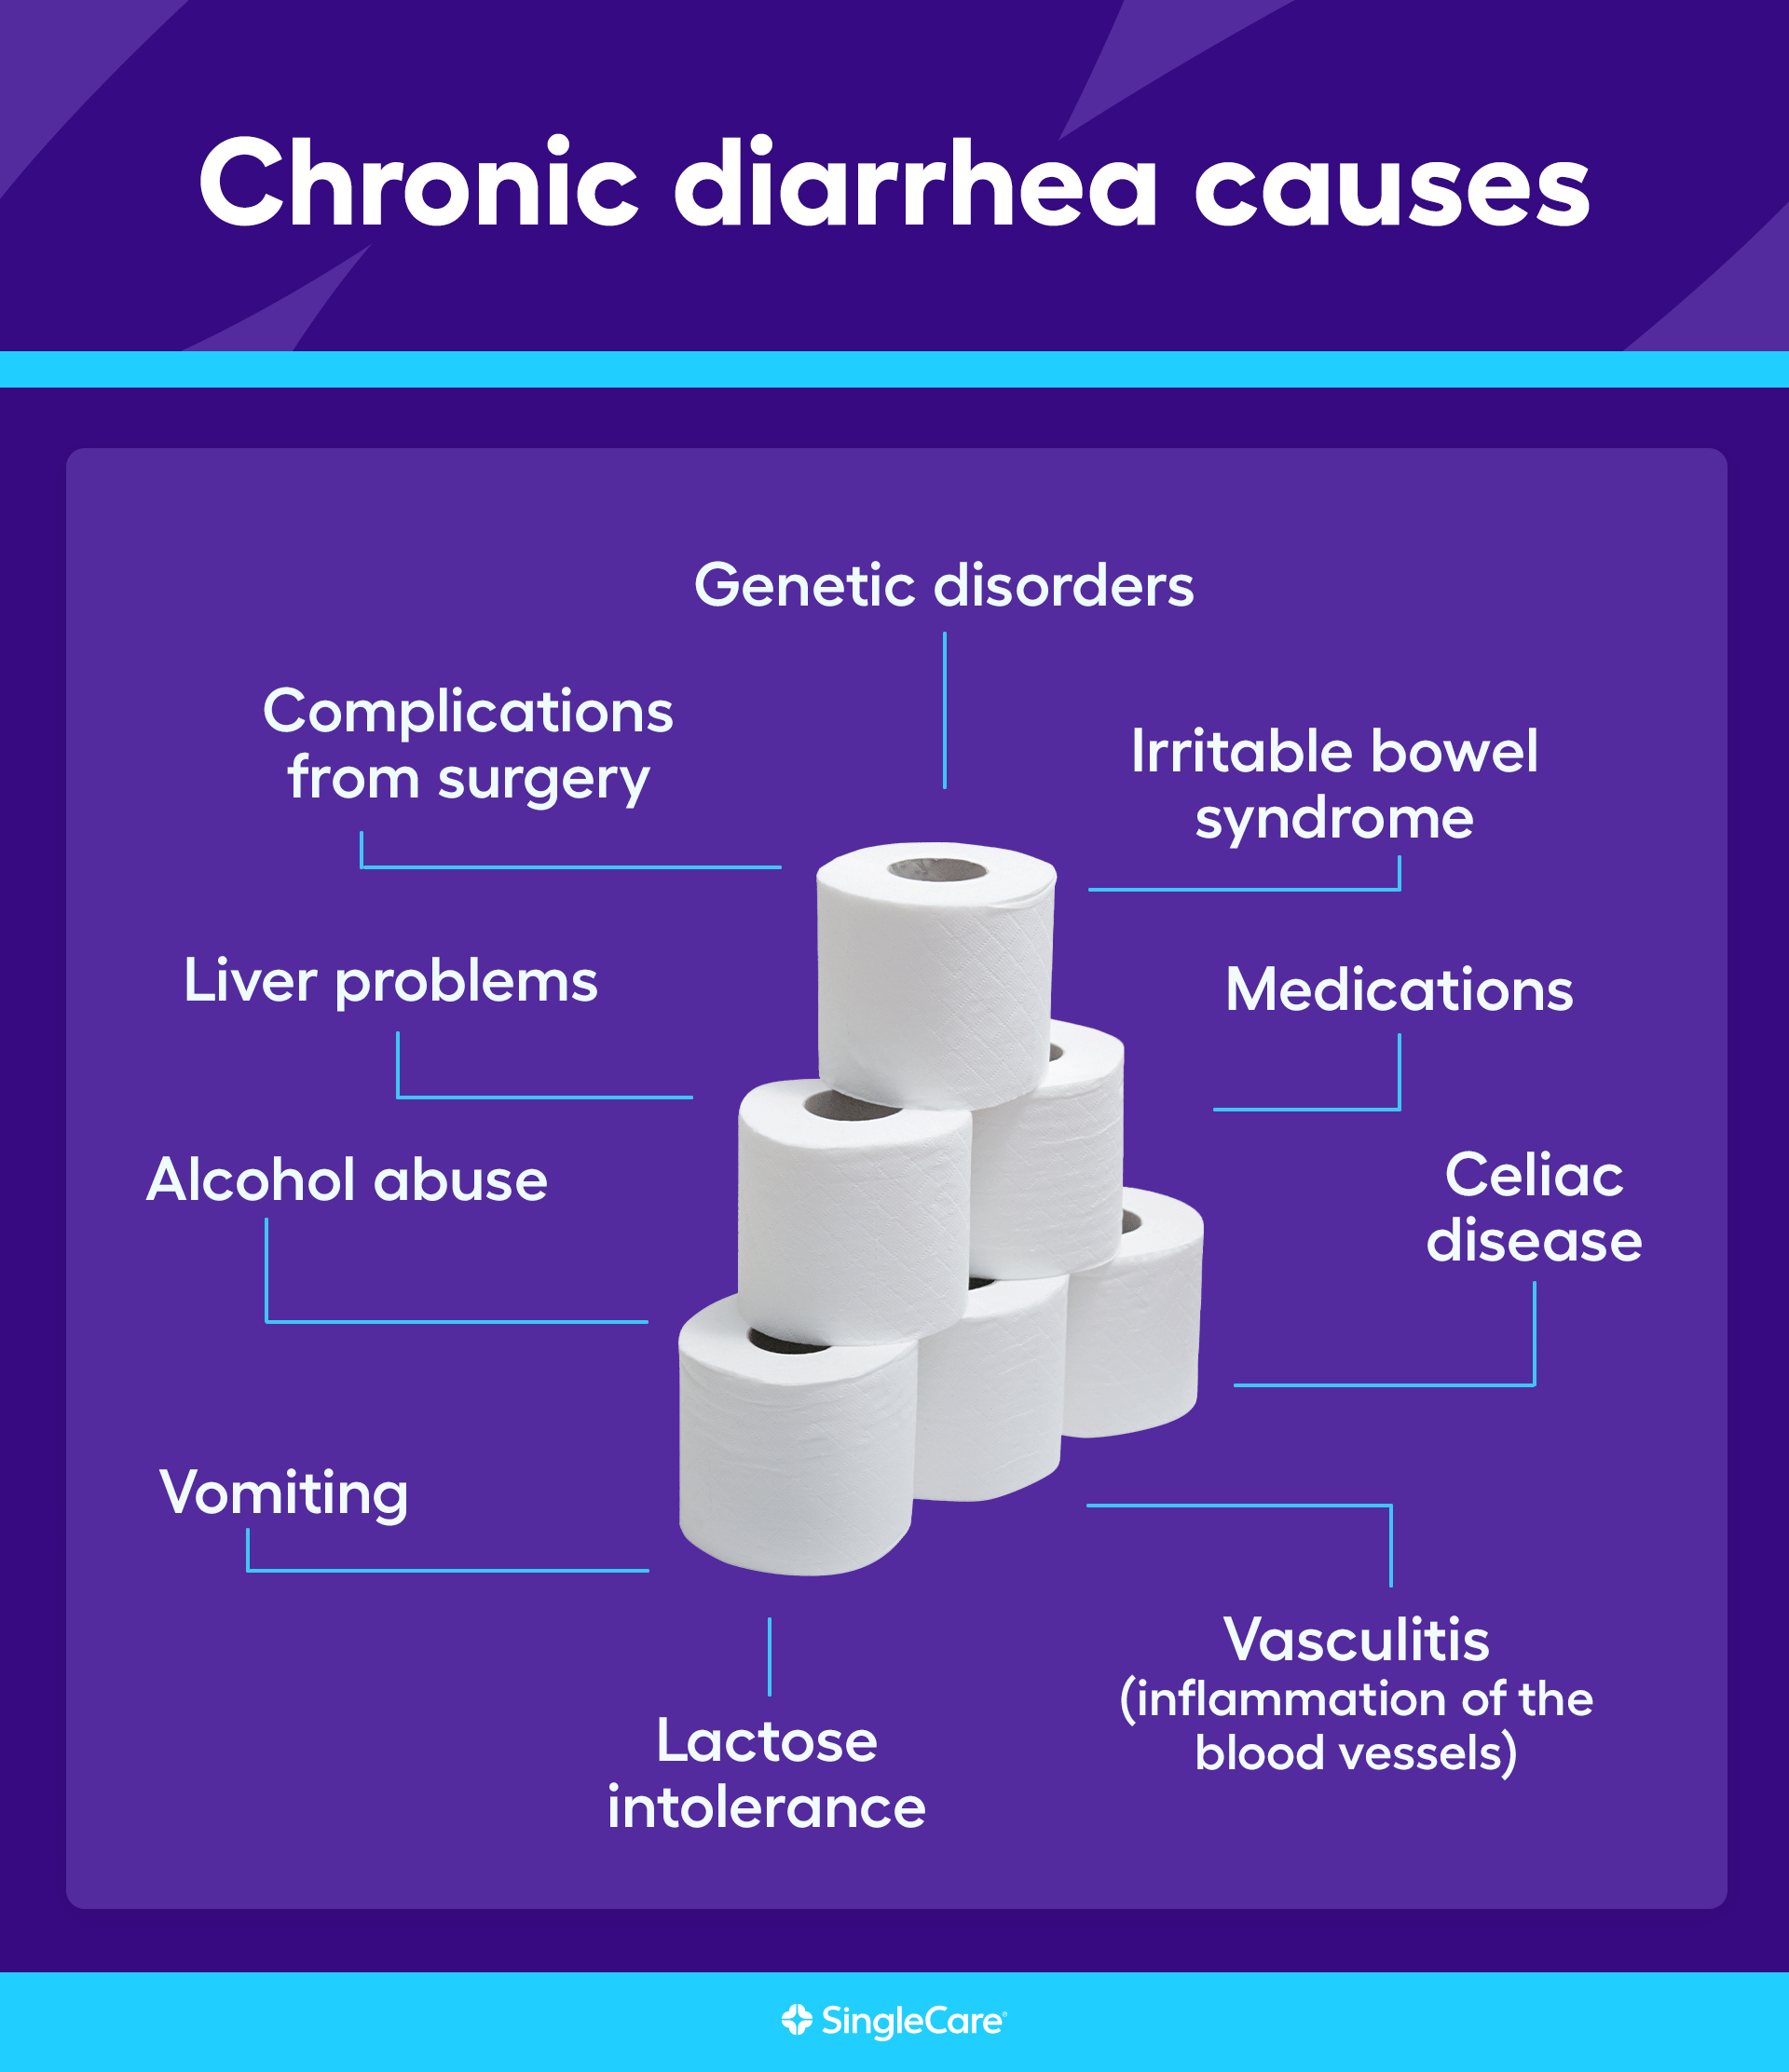 Causes of chronic diarrhea